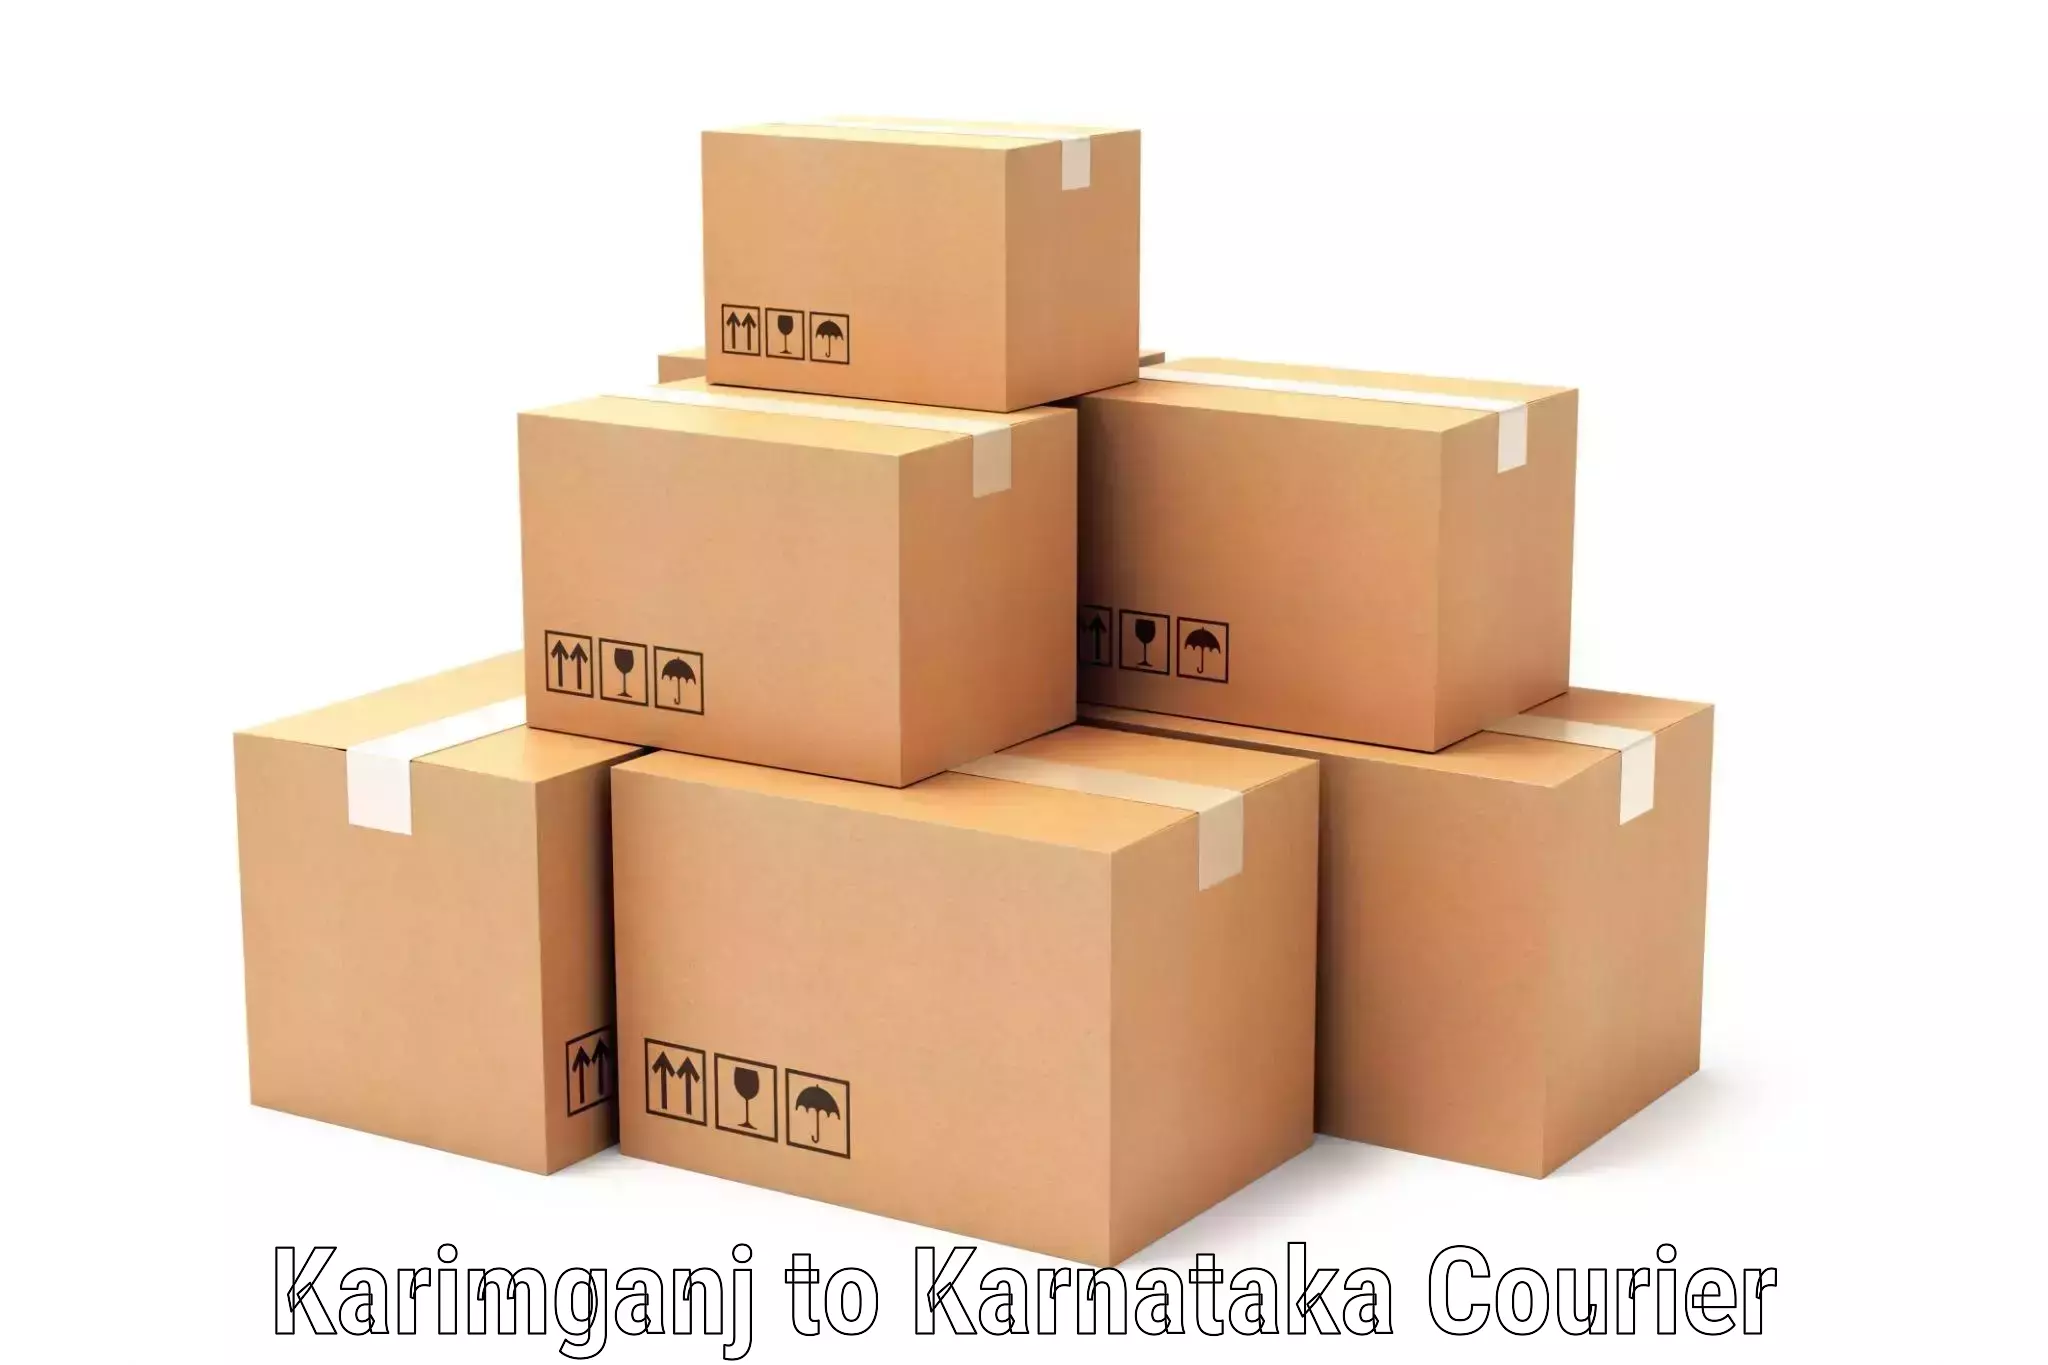 Large-scale shipping solutions Karimganj to Mangalore Port